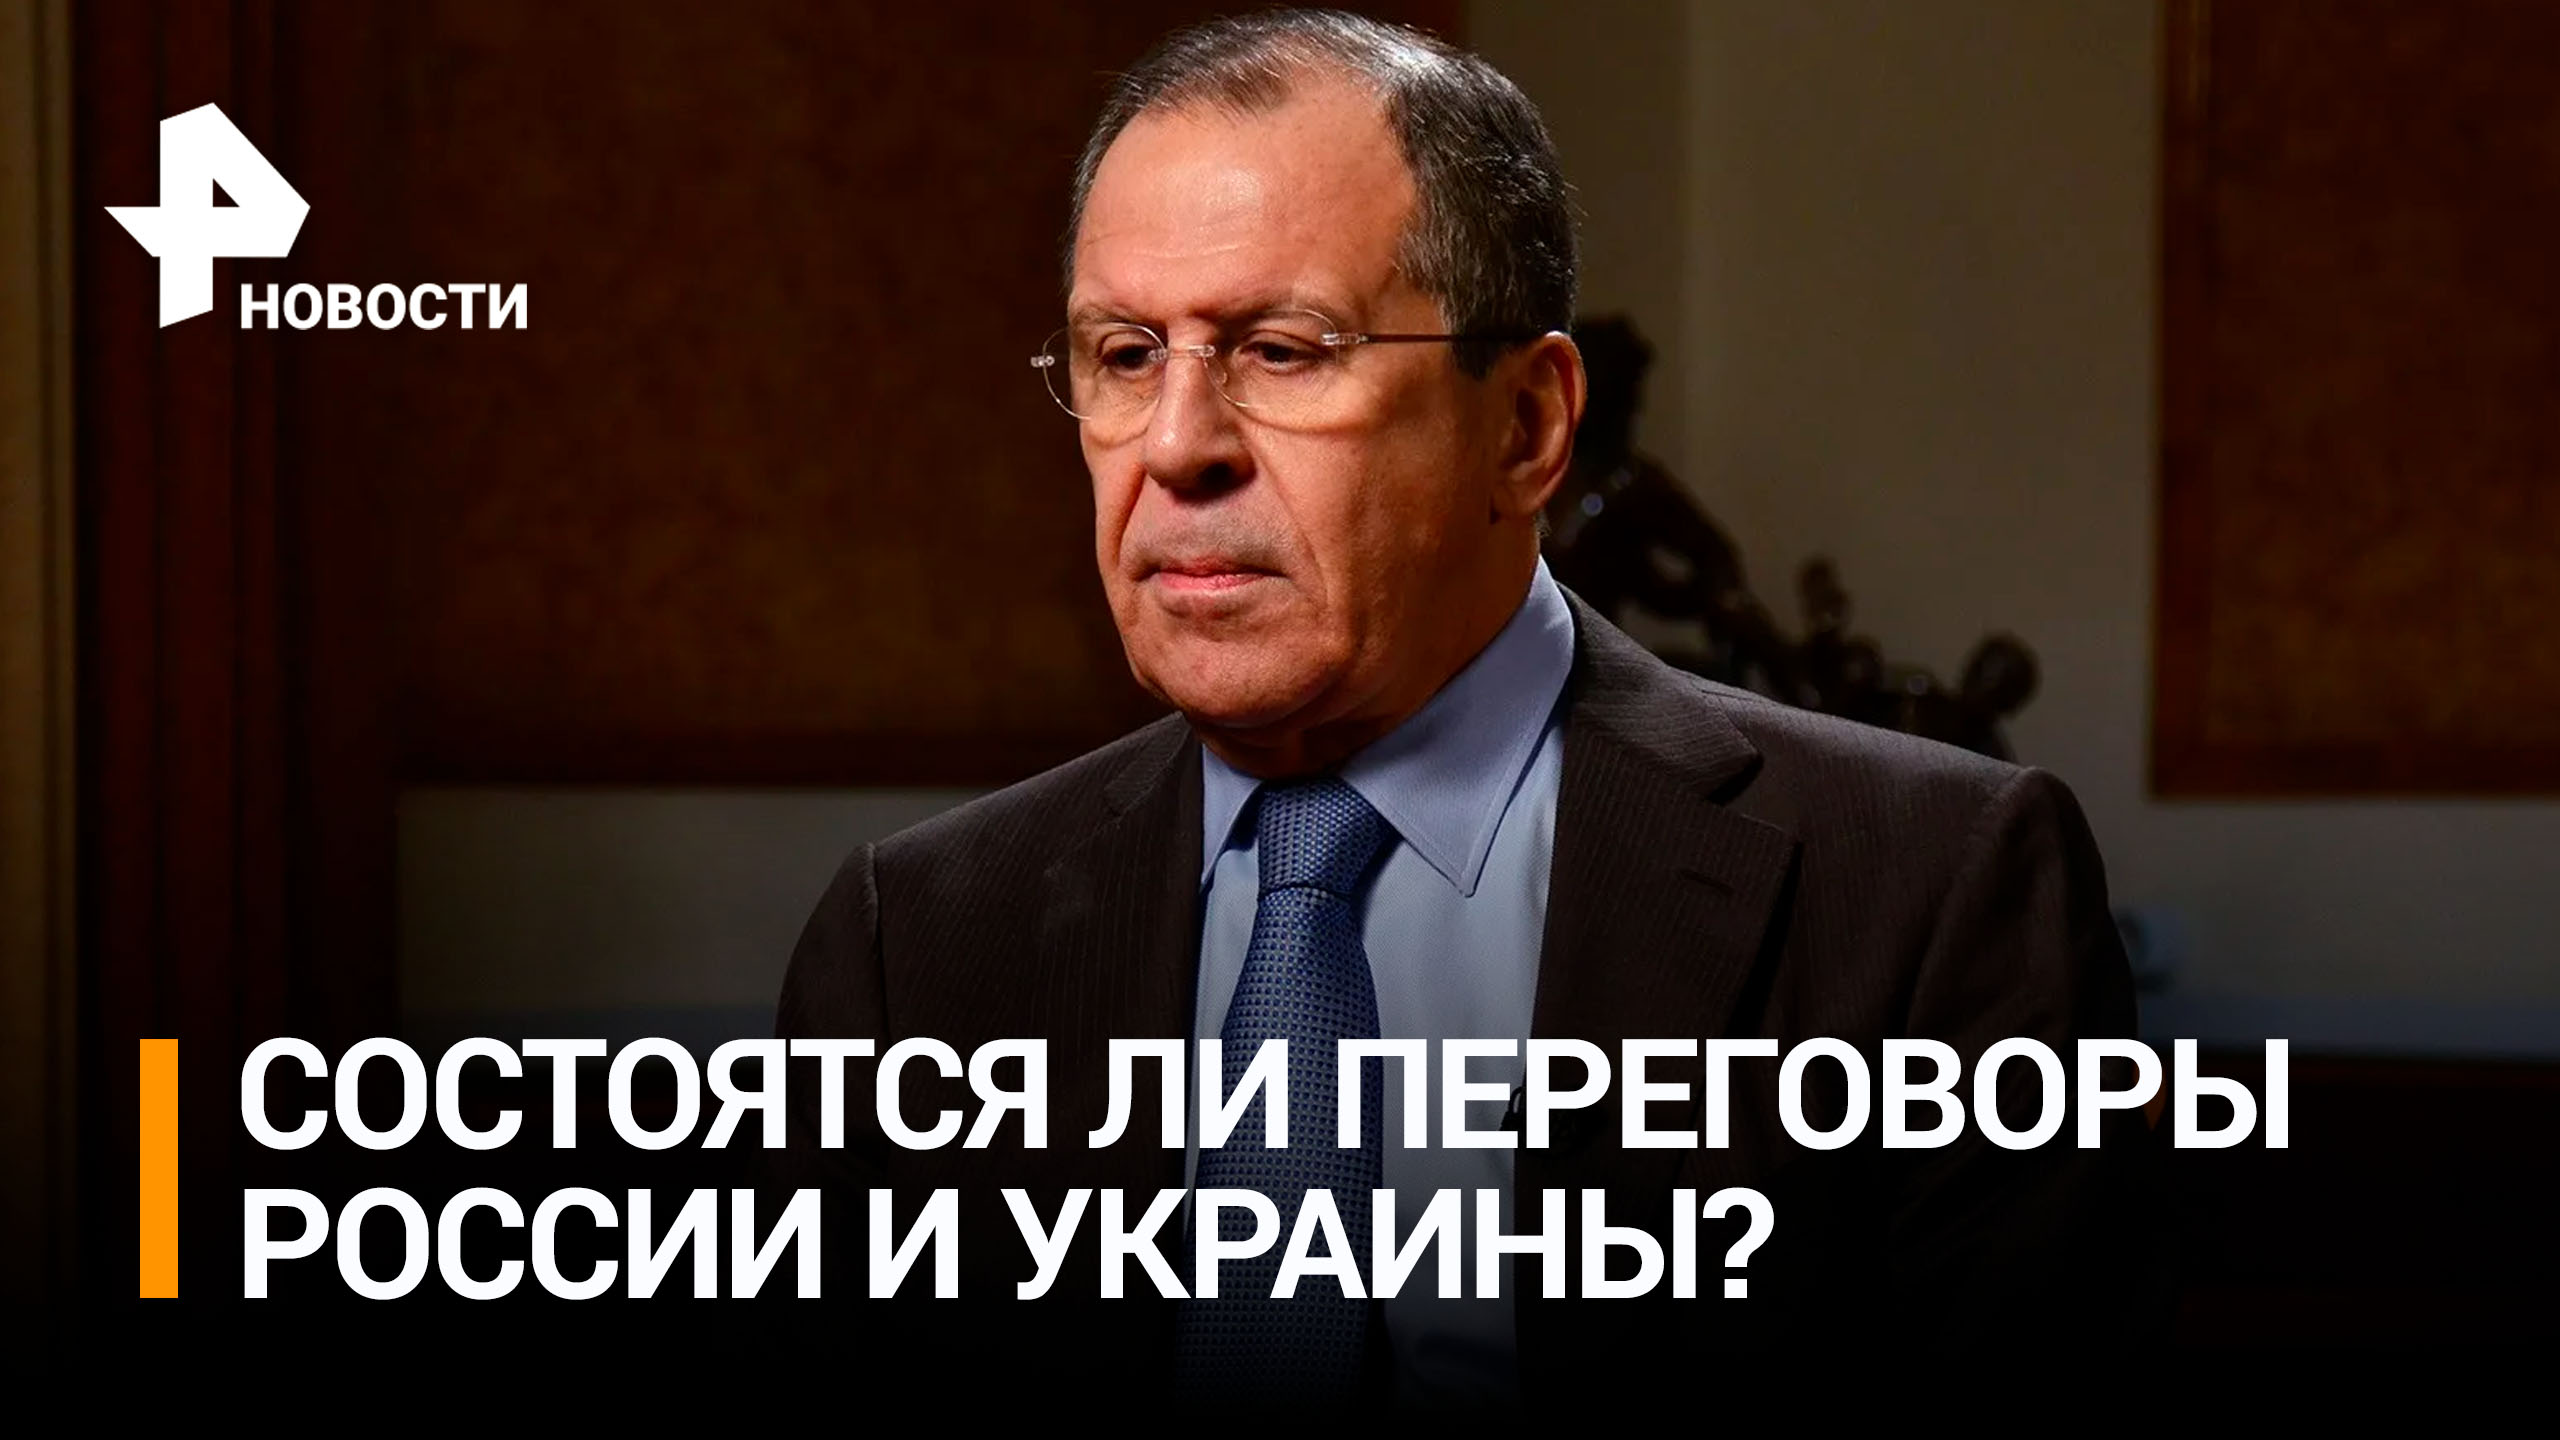 Лавров заявил, что США не разрешают Украине вести переговоры с РФ / РЕН Новости